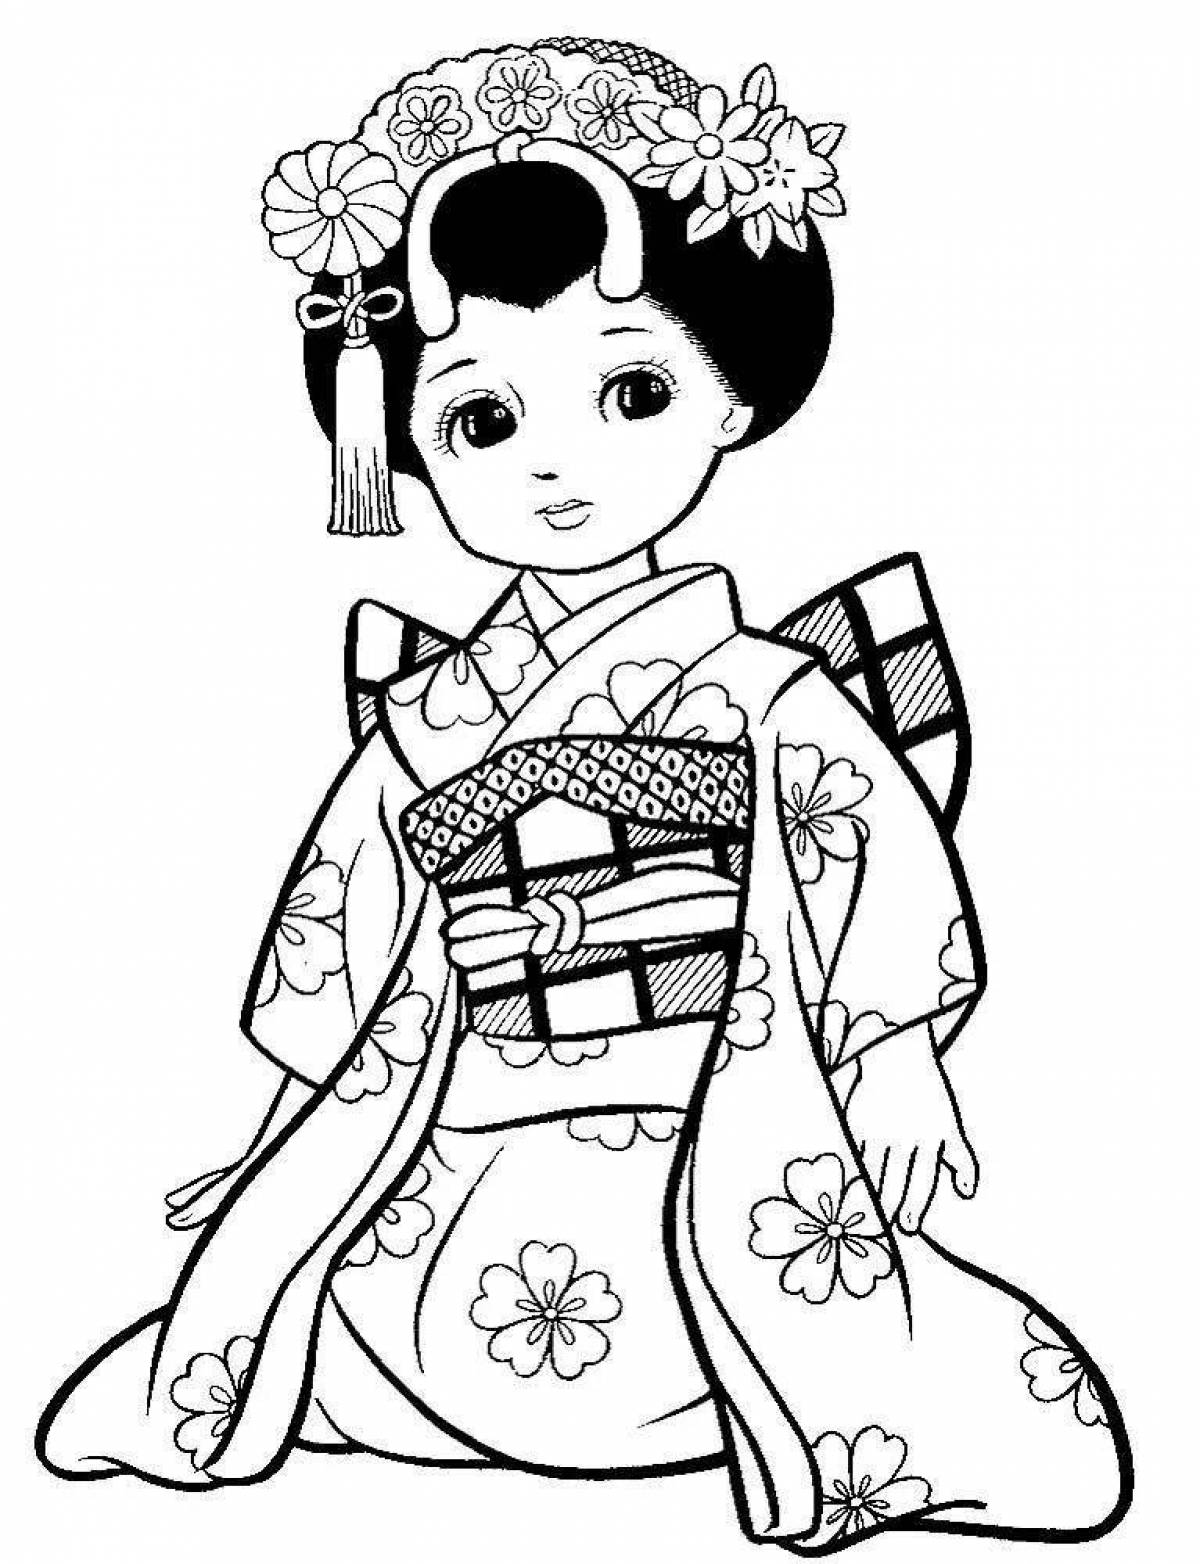 Awesome kimono coloring page